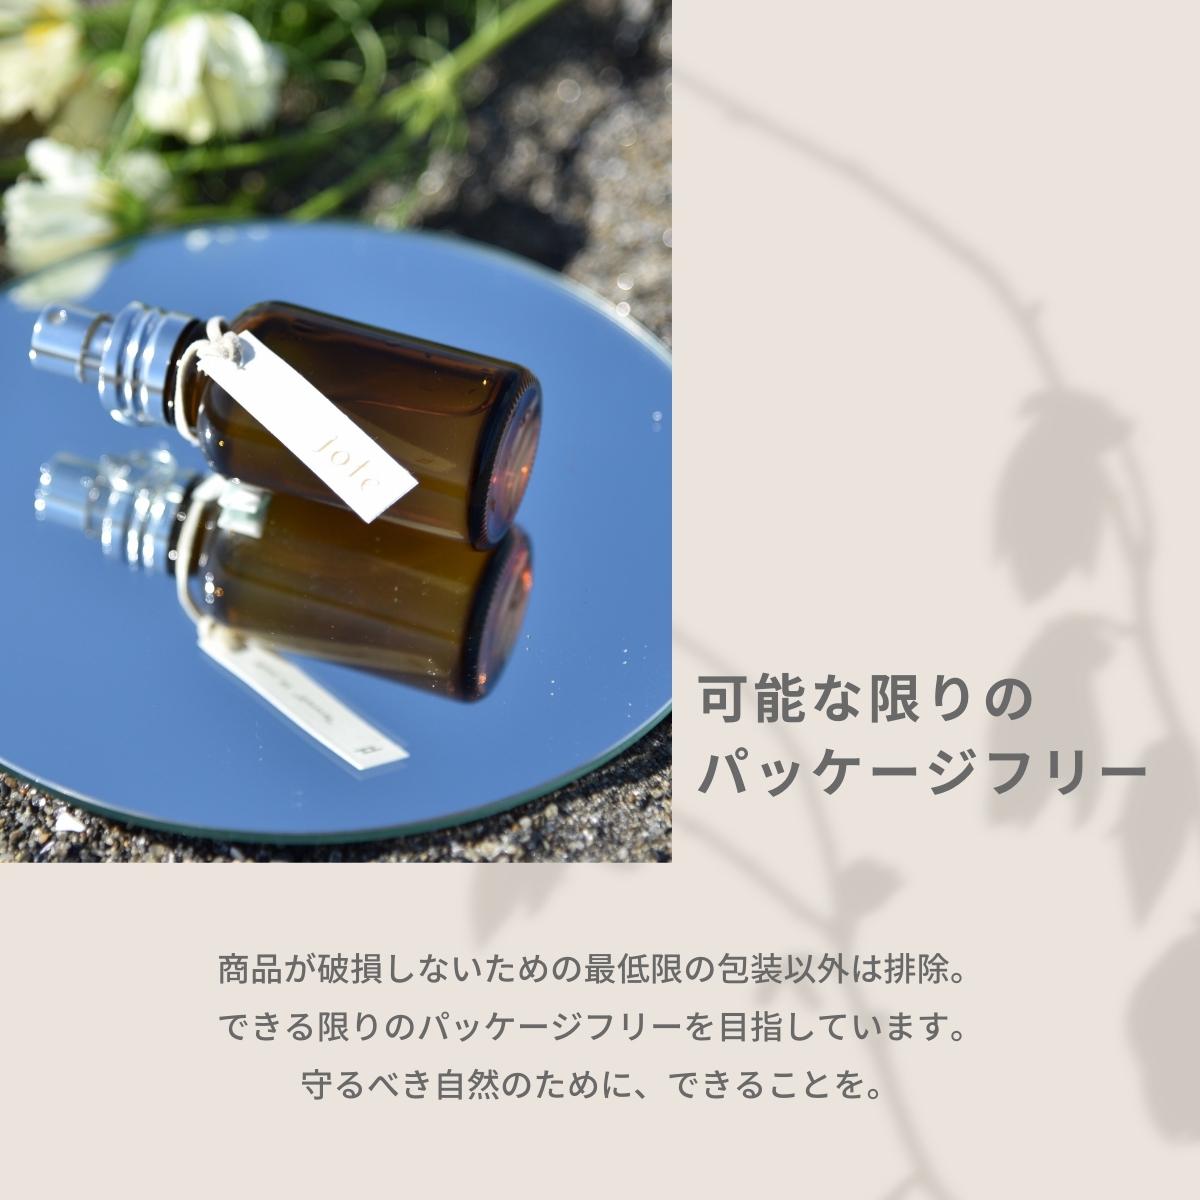 【 Floral set 】Perfume フローラルの香りお試し5ml 3本セット